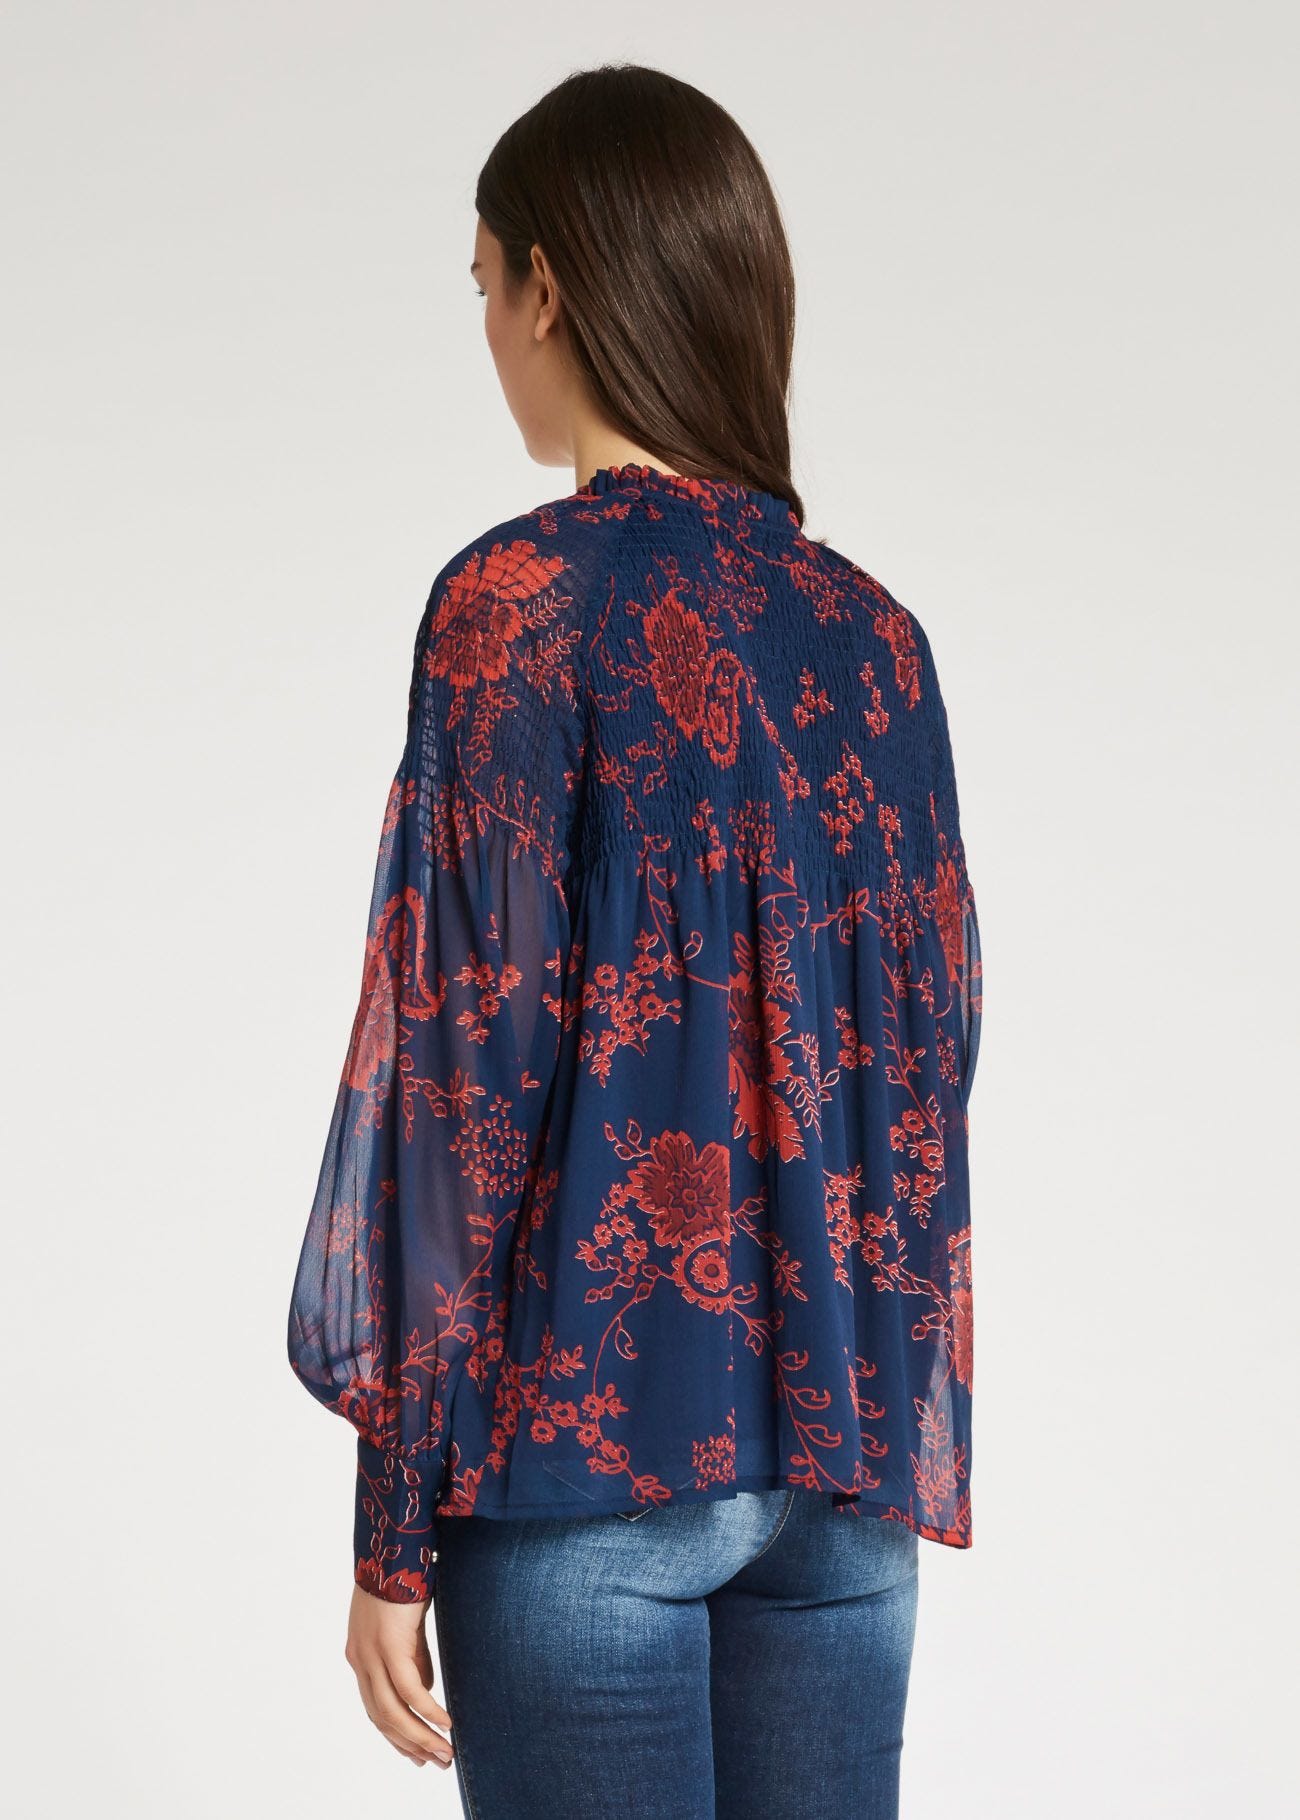 Floral-print blouse